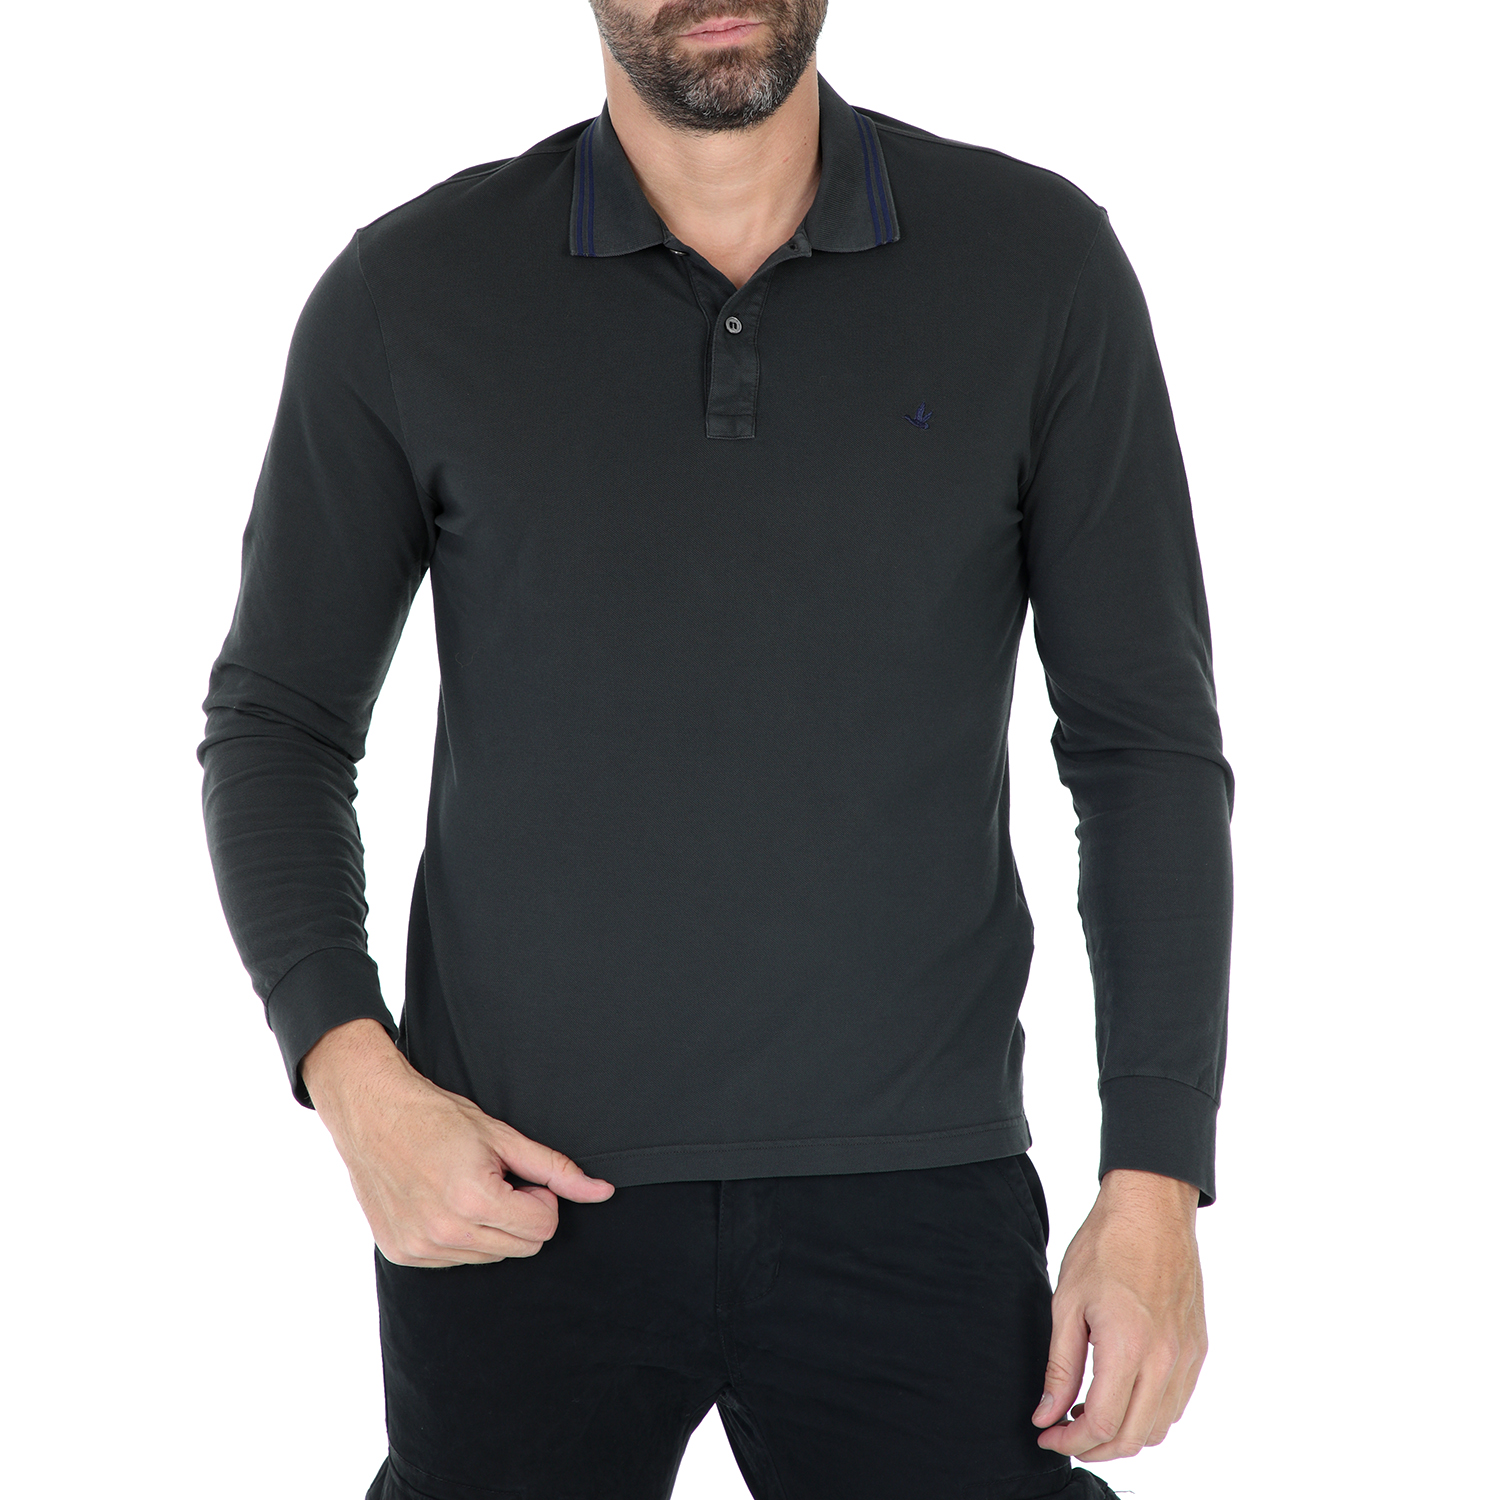 Ανδρικά/Ρούχα/Μπλούζες/Πόλο BROOKSFIELD - Ανδρική μπλούζα polo BROOKSFIELD POLO SHIRT μαύρο